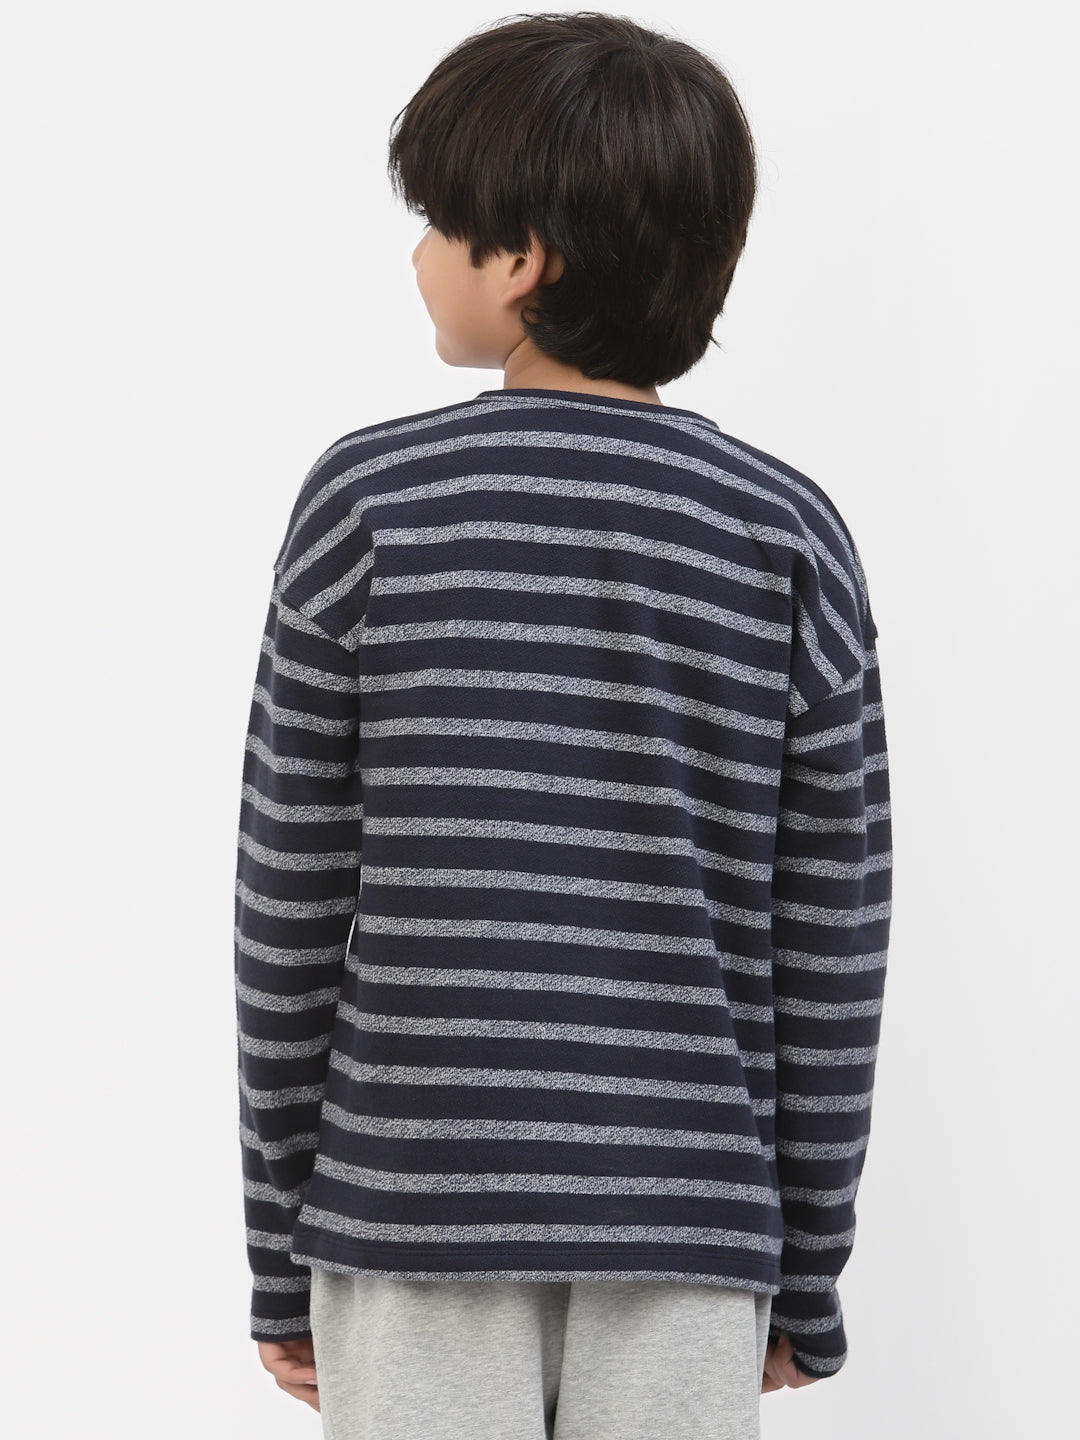 Spunkies Boys Winter Stripe Printed Tshirt